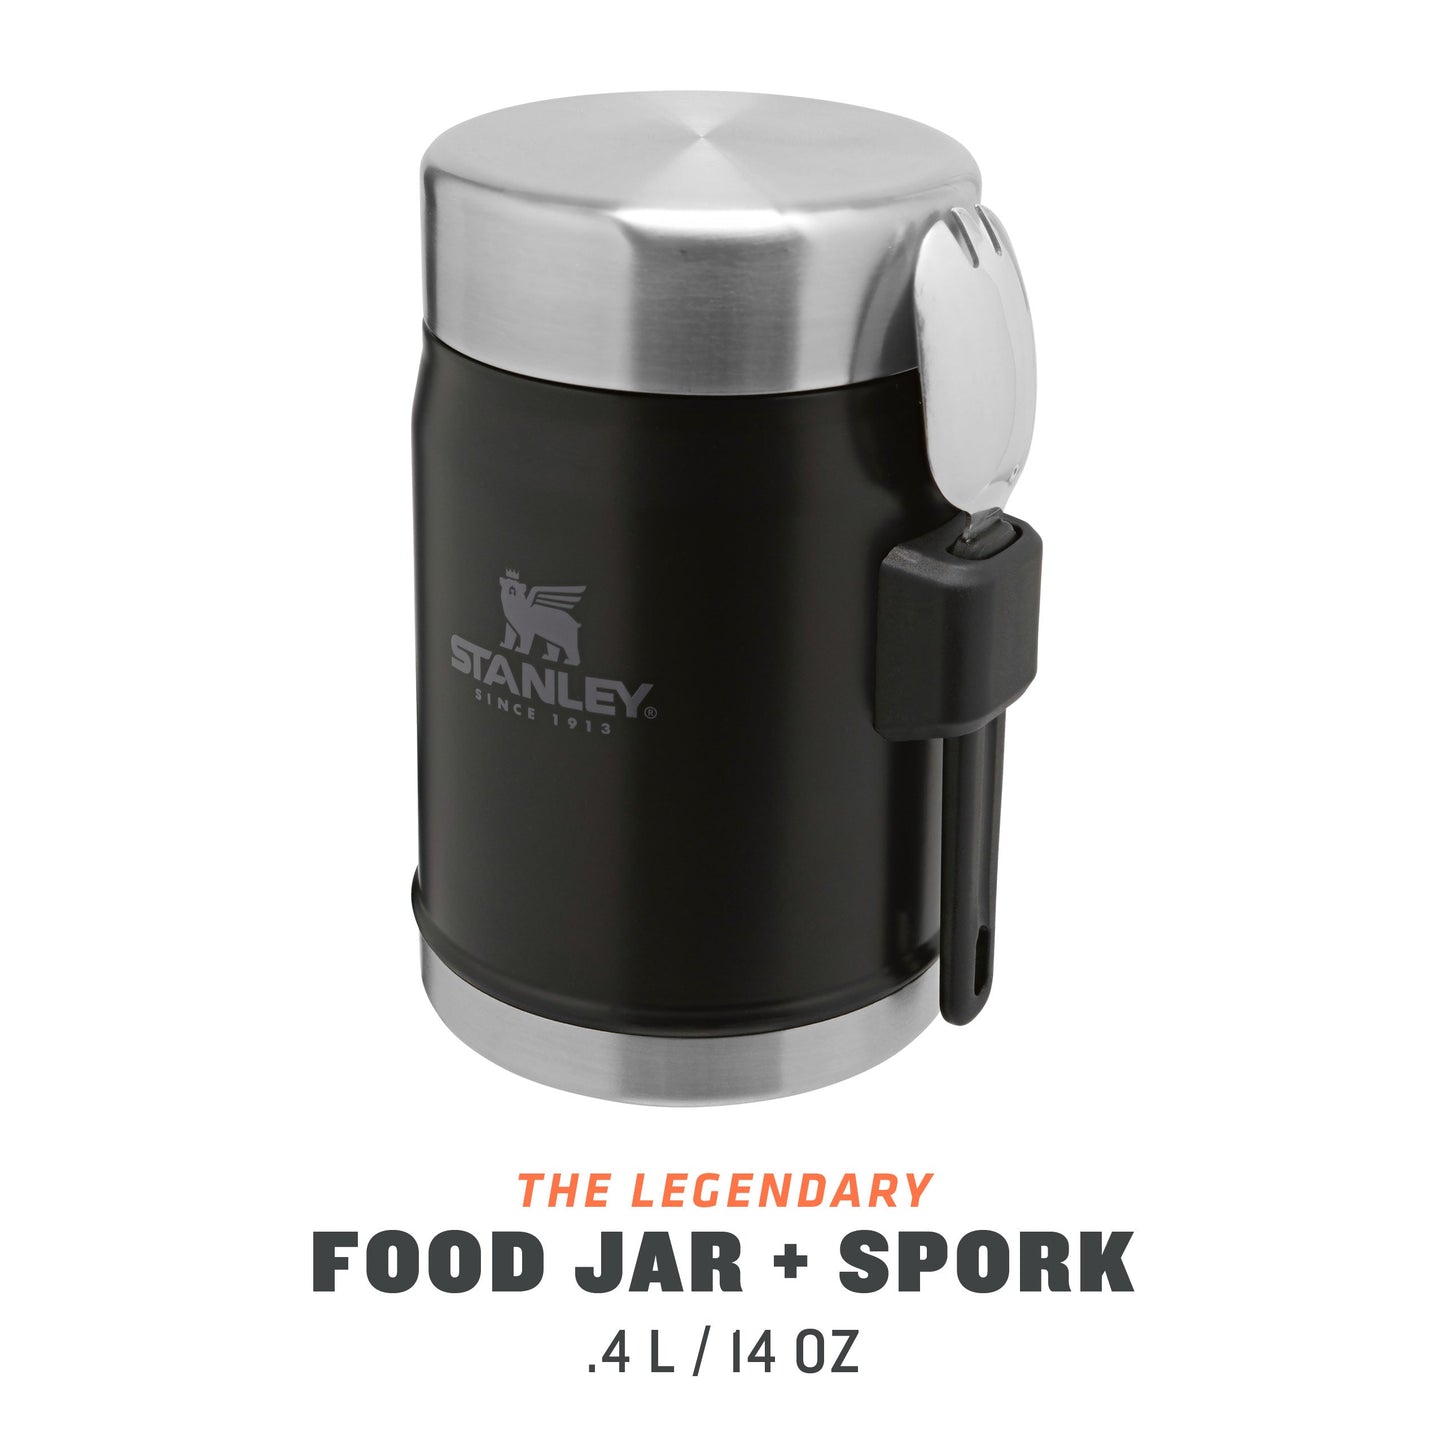 Classic Legendary Food Jar + Spork | 0.4L